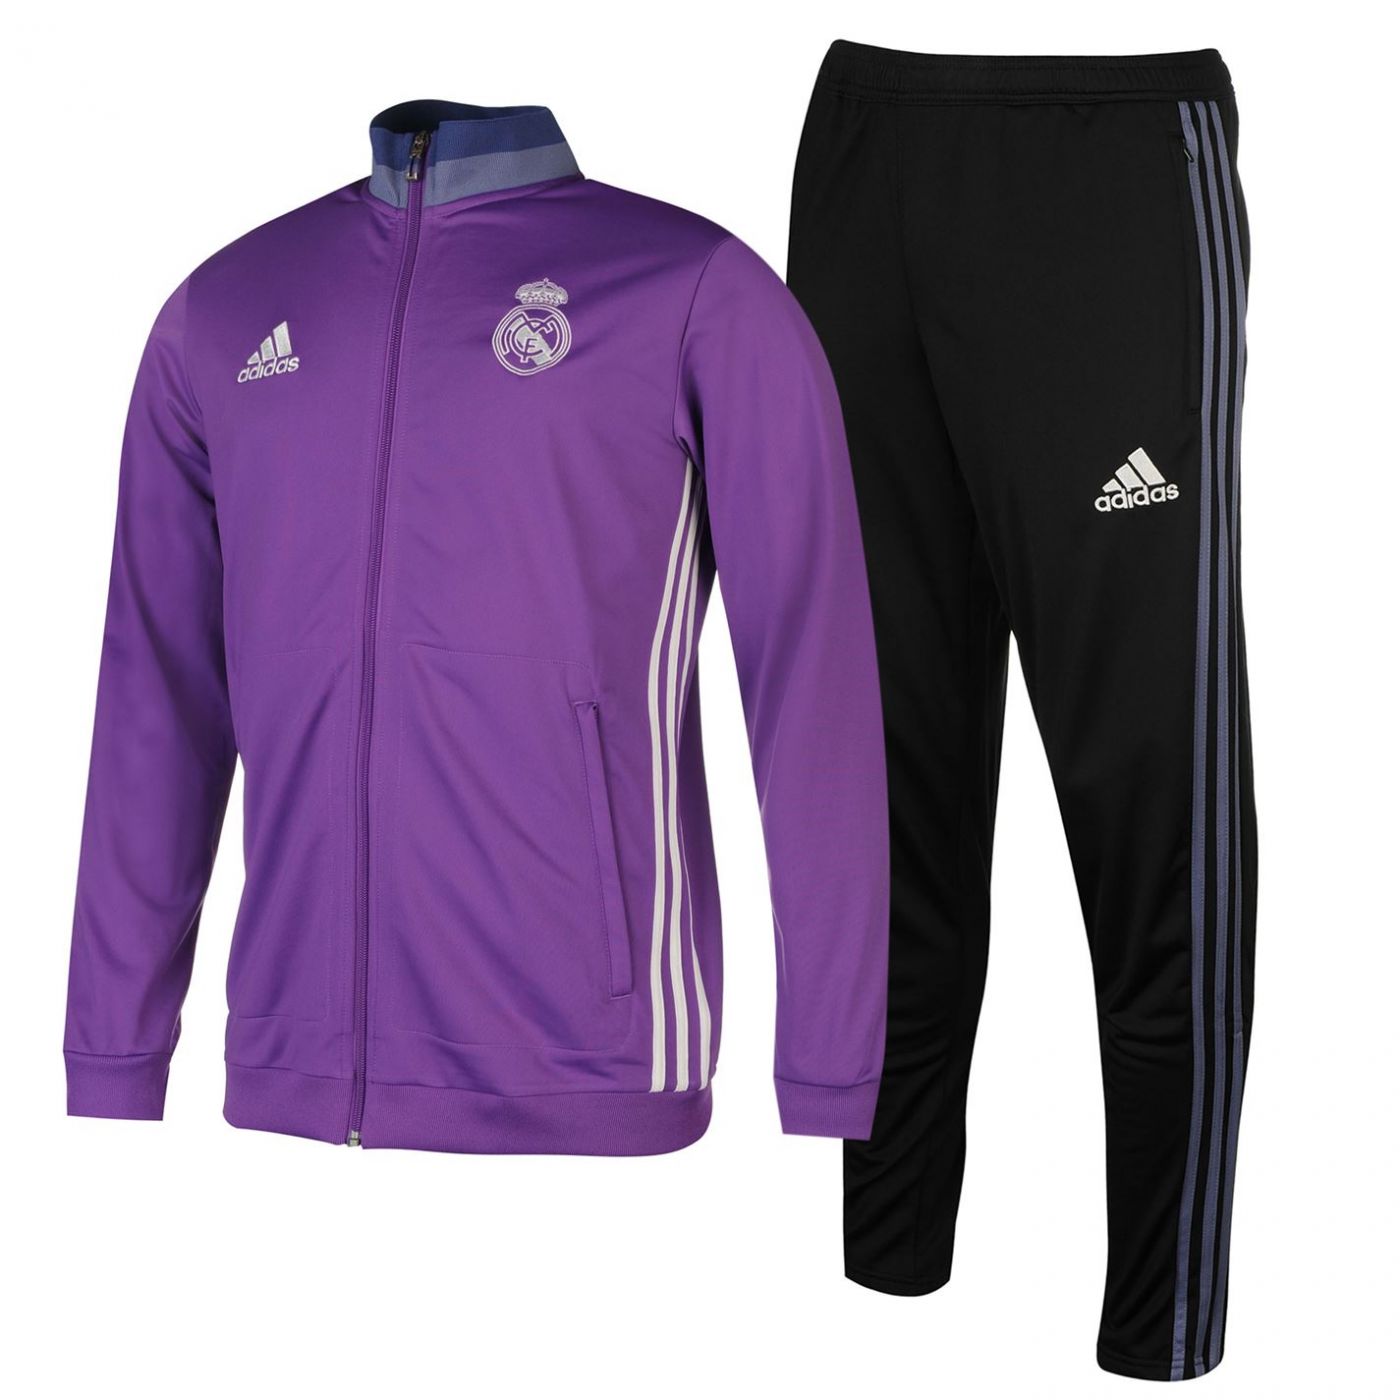 Adidas real Madrid спортивный костюм